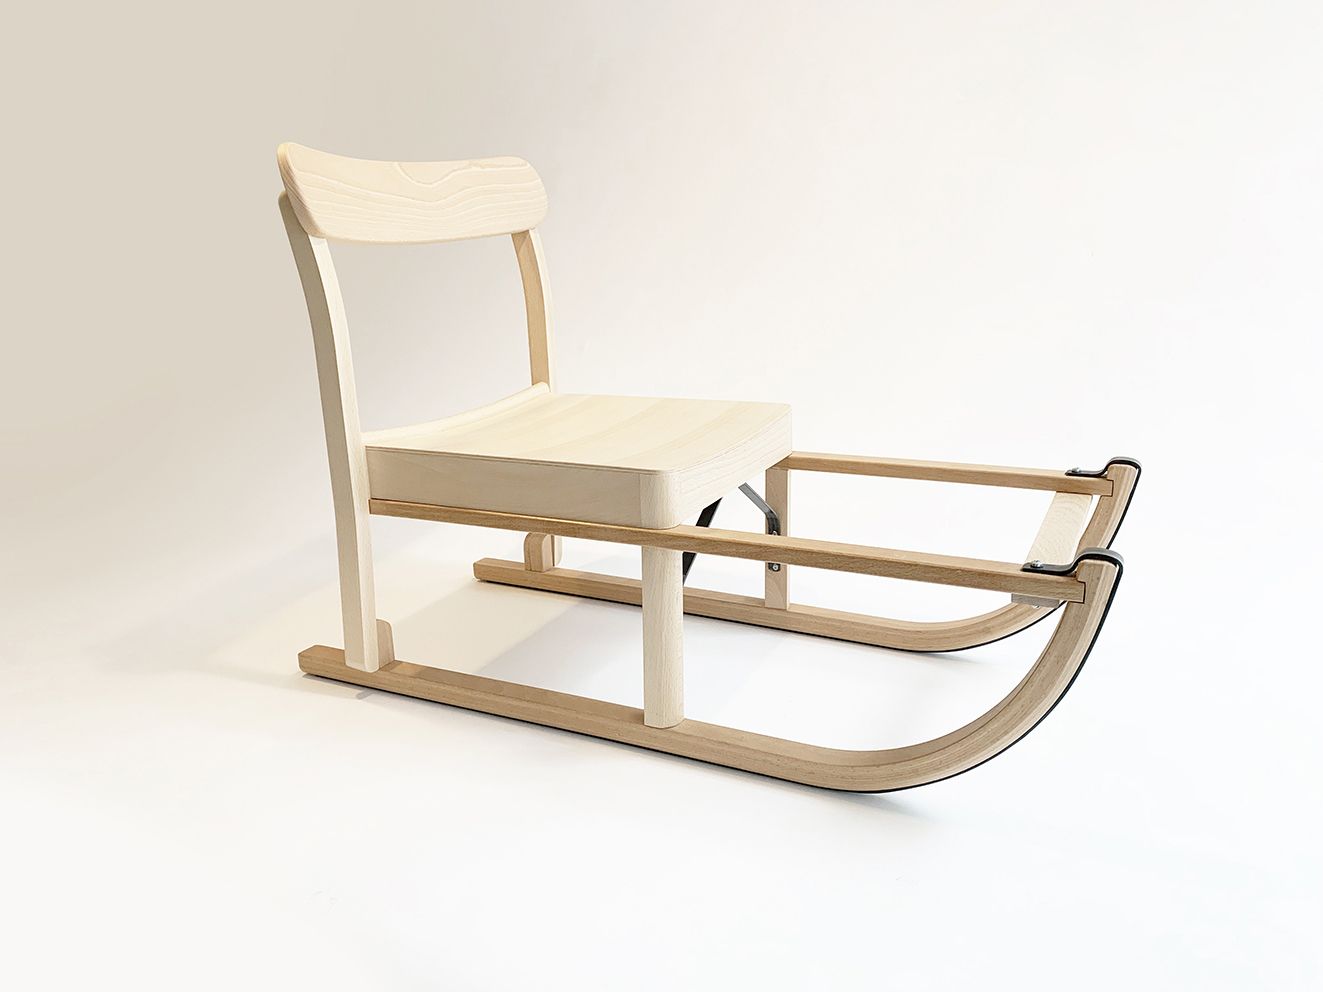 Grégoire de Lafforest Sled chair



"Der Chaise Atelier wurde von TAF Studio mit&hellip;